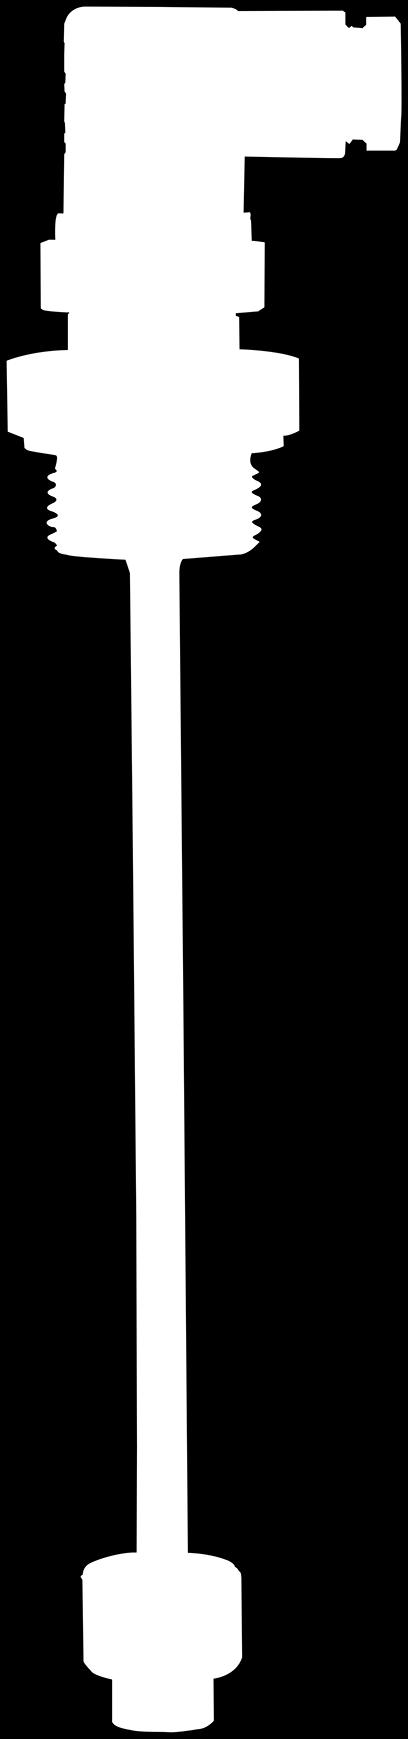 Figure de gauche : raccord fileté, connecteur coudé, flotteur en NBR Figure de droite : raccord fileté, connecteur circulaire M x, flotteur en acier inox Principe de mesure Un aimant permanent placé